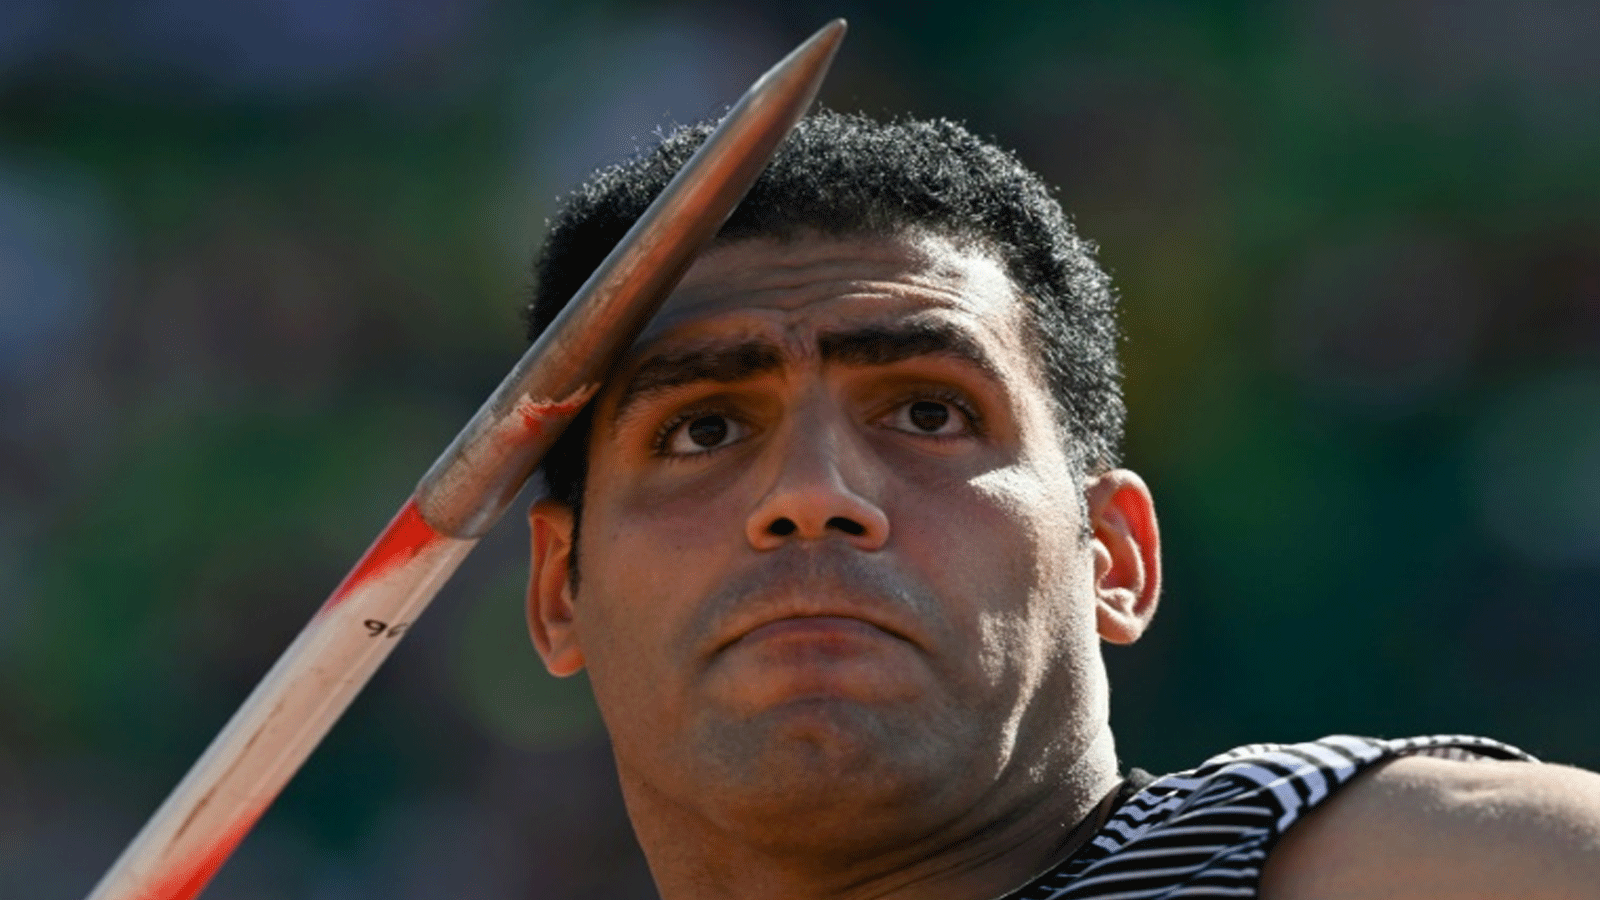 المصري ايهاب عبد الرحمن خلال مشاركته في تصفيات مسابقة رمي الرمح في مونديال يوجين لألعاب القوى في 21 تموز/يوليو 2022.